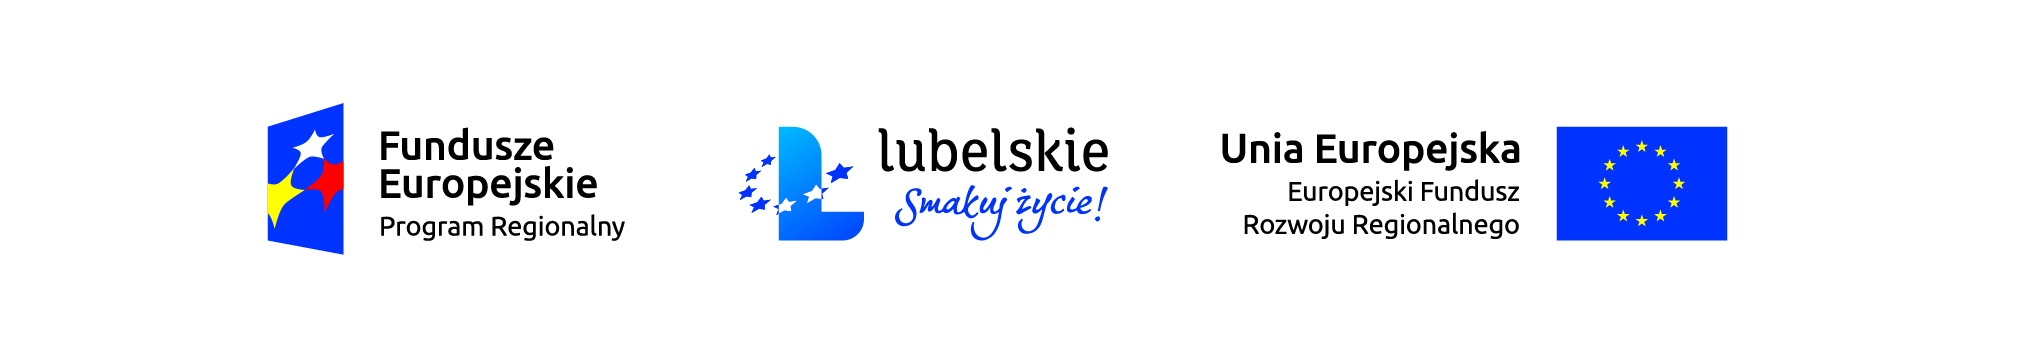 Znalezione obrazy dla zapytania logo lubelskich funduszy europejskich